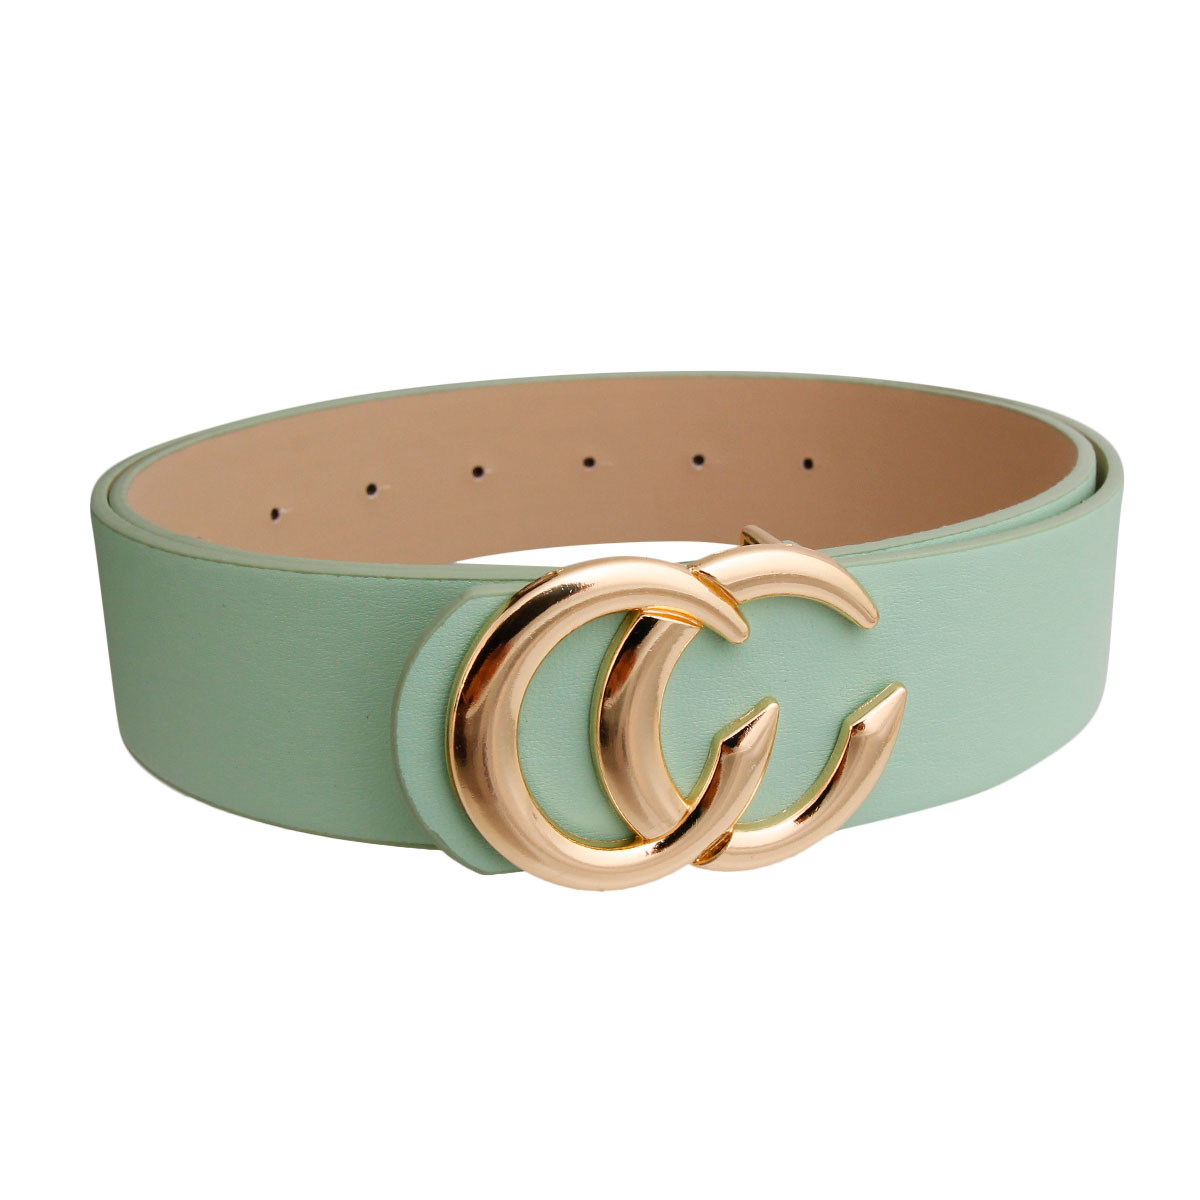 Mint and Gold C Designer Belt